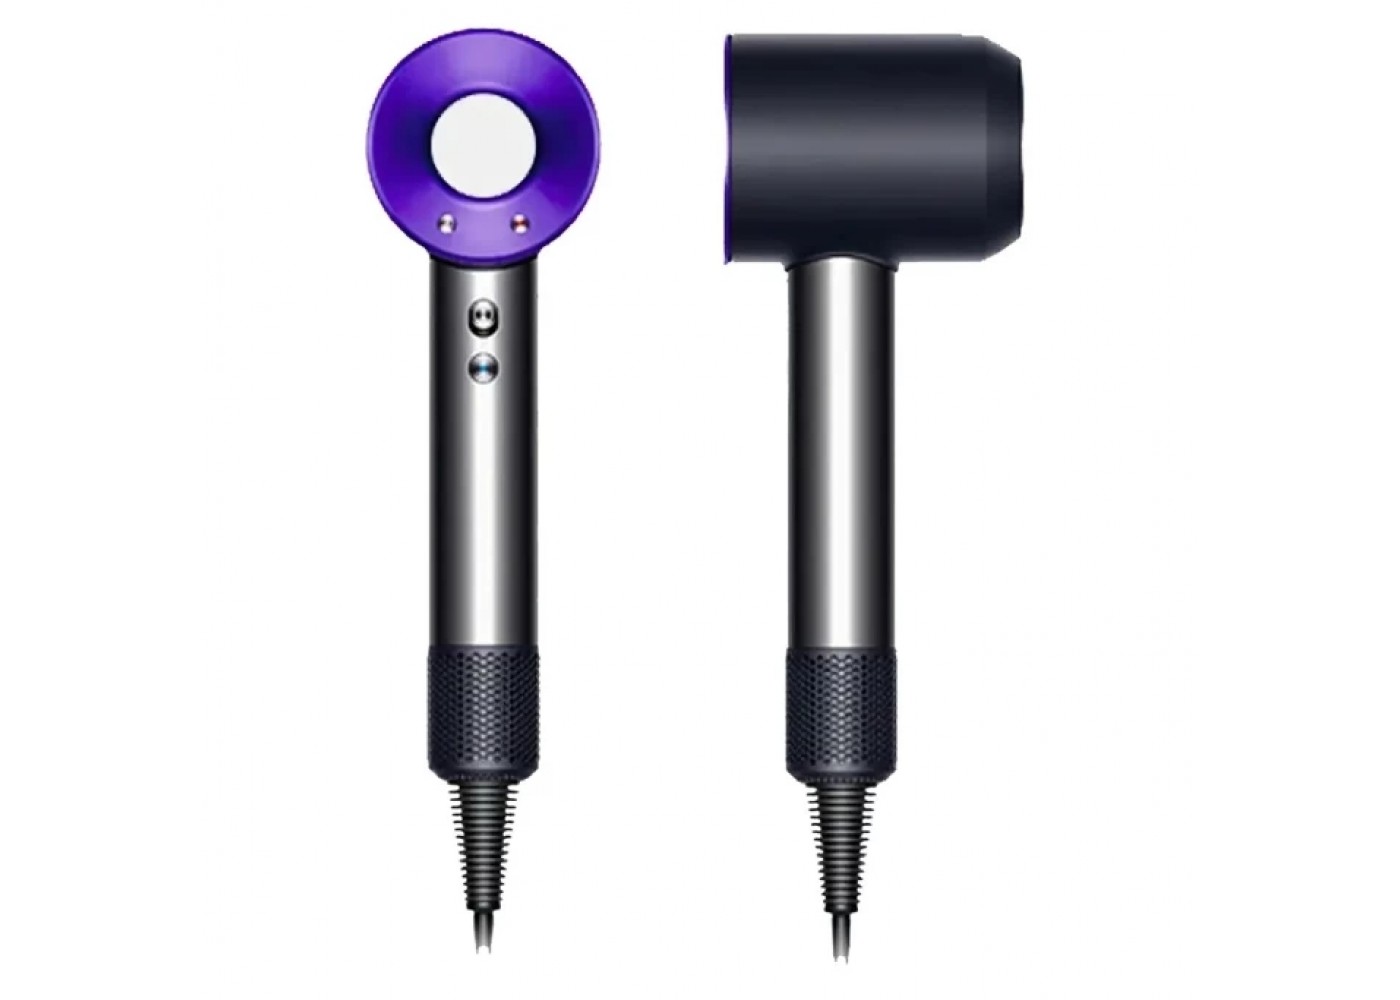 Фен для волос XiaoMi SenCiciMen Hair Dryer HD15, Пурпурный